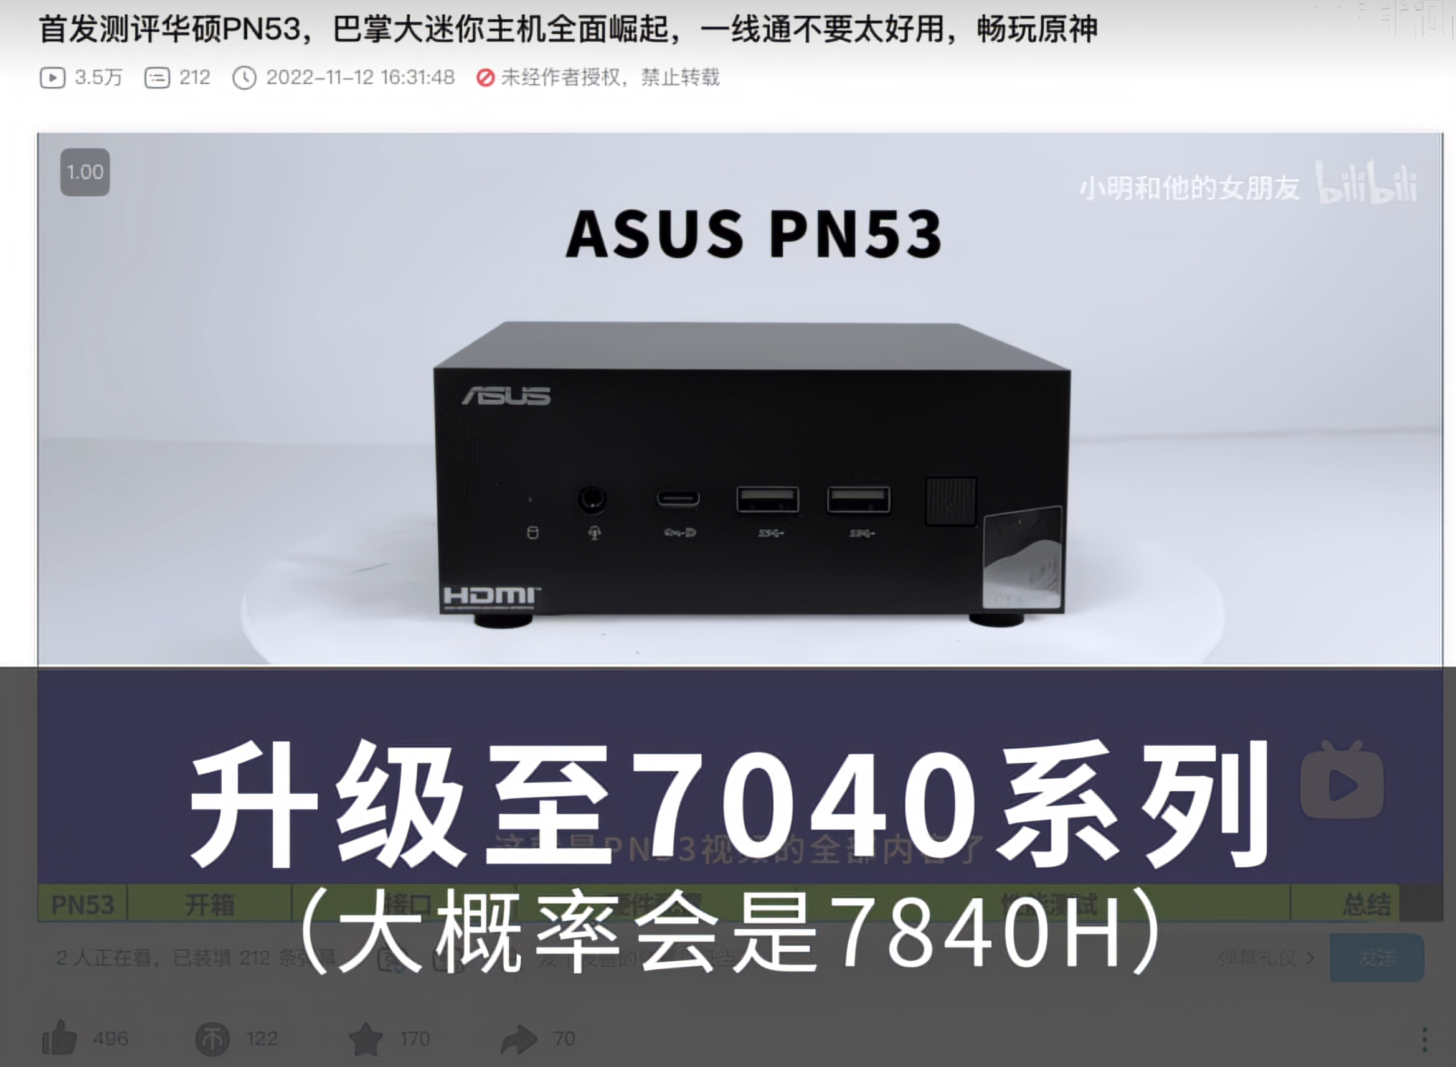 AMD-Ryzen-7040-Phoenix-APU-Powered-MIni-PCs-Launching-Soon-_2-1456x1067.png